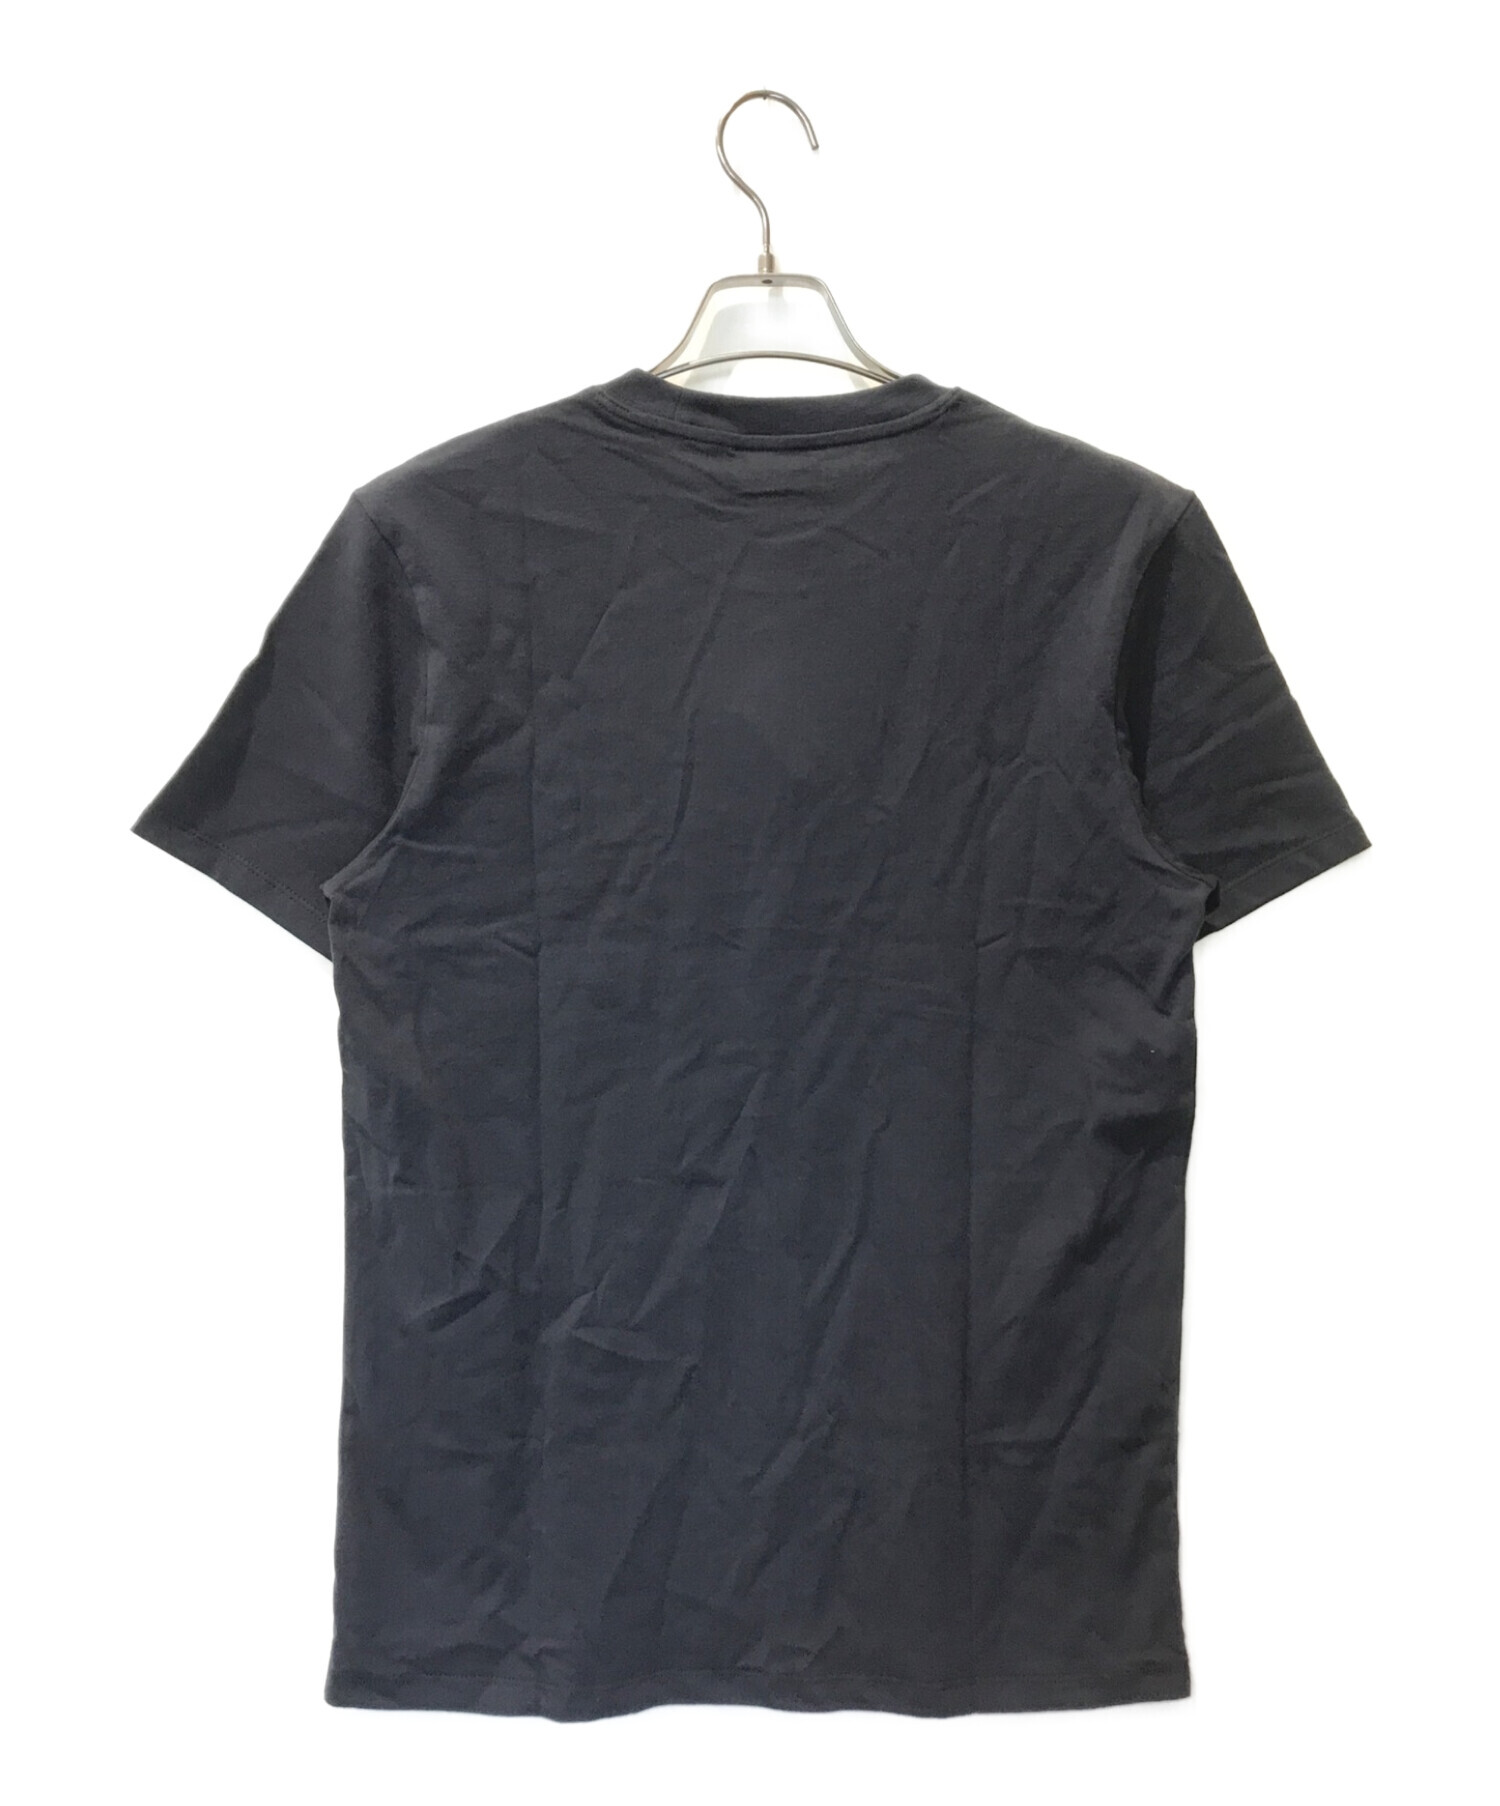 MAISON KITSUNE (メゾンキツネ) Tシャツ ブラック サイズ:M 未使用品